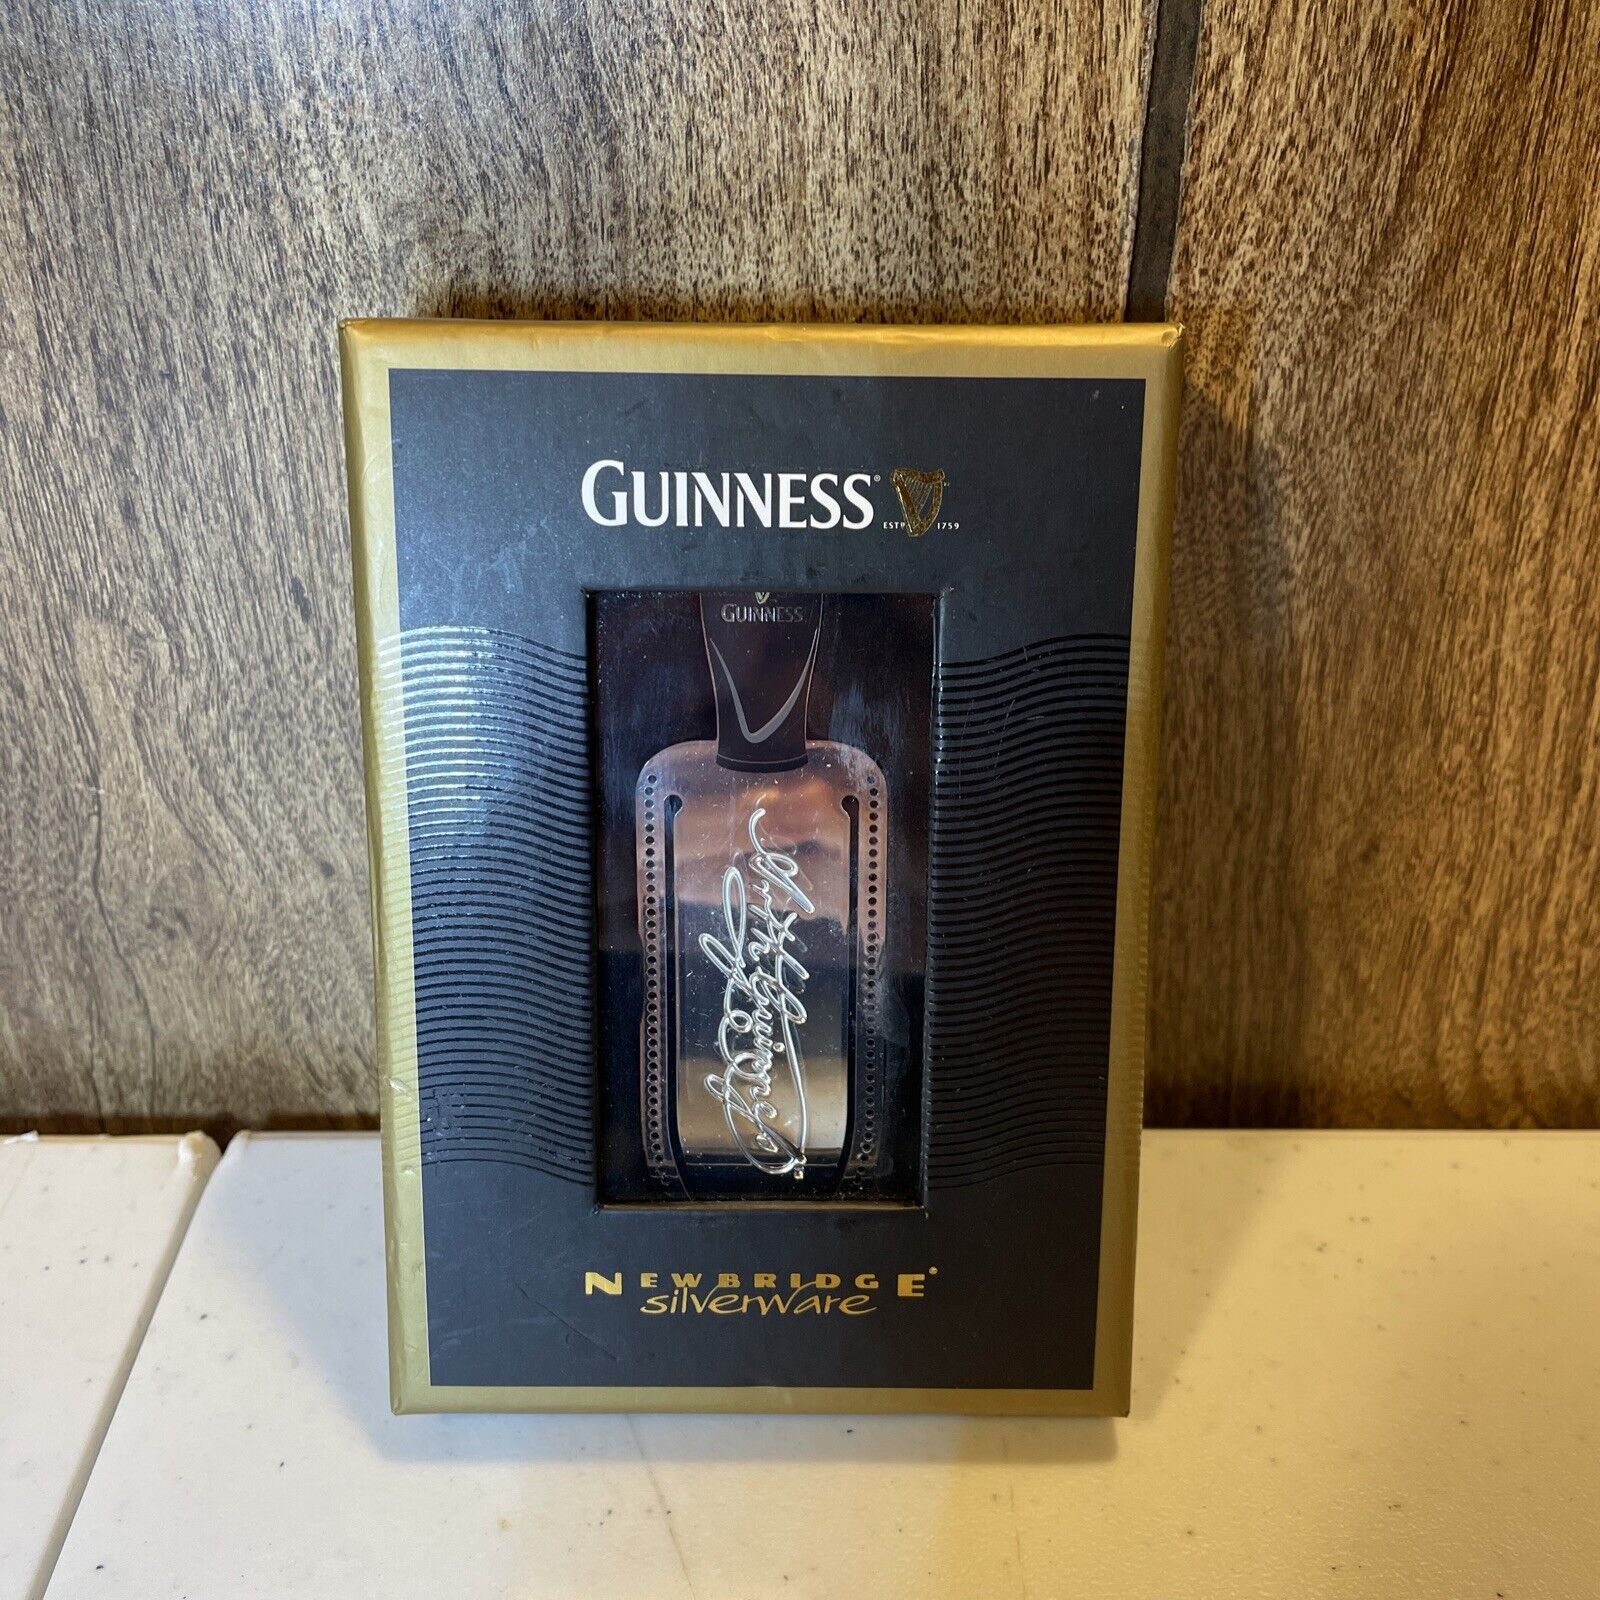 Guinness Pint Bookmark w/ Tassel by Newbridge Silverware For Guinness BOXED